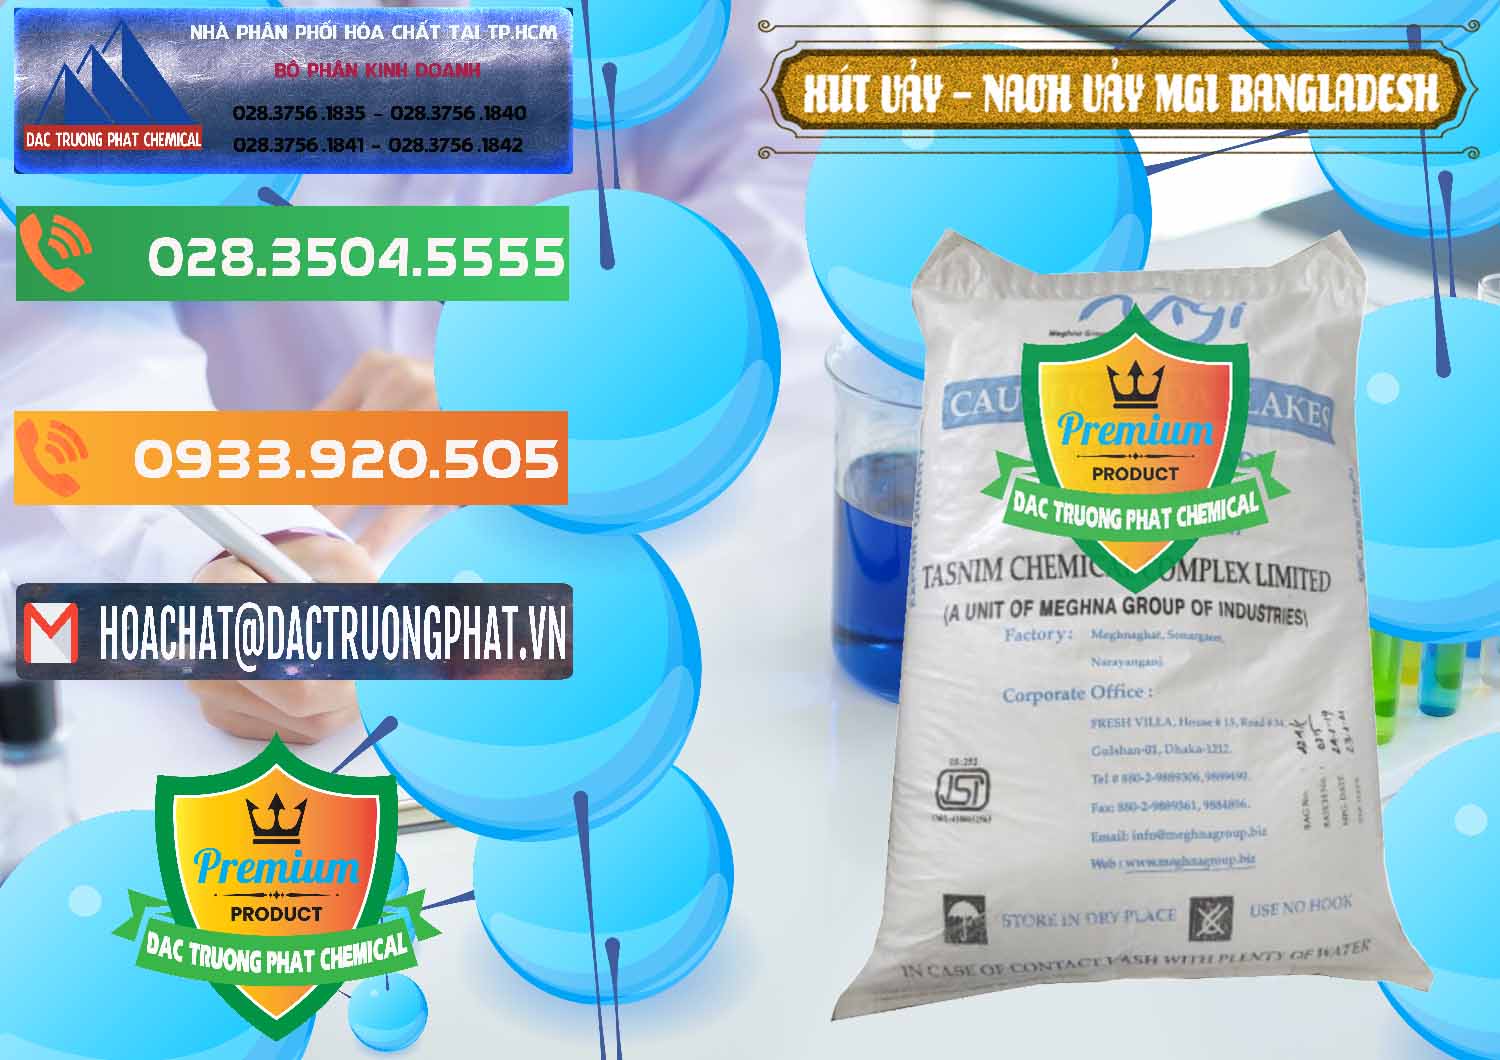 Đơn vị kinh doanh và bán Xút Vảy - NaOH Vảy 99% MGI Bangladesh - 0274 - Nơi chuyên kinh doanh & phân phối hóa chất tại TP.HCM - hoachatxulynuoc.com.vn